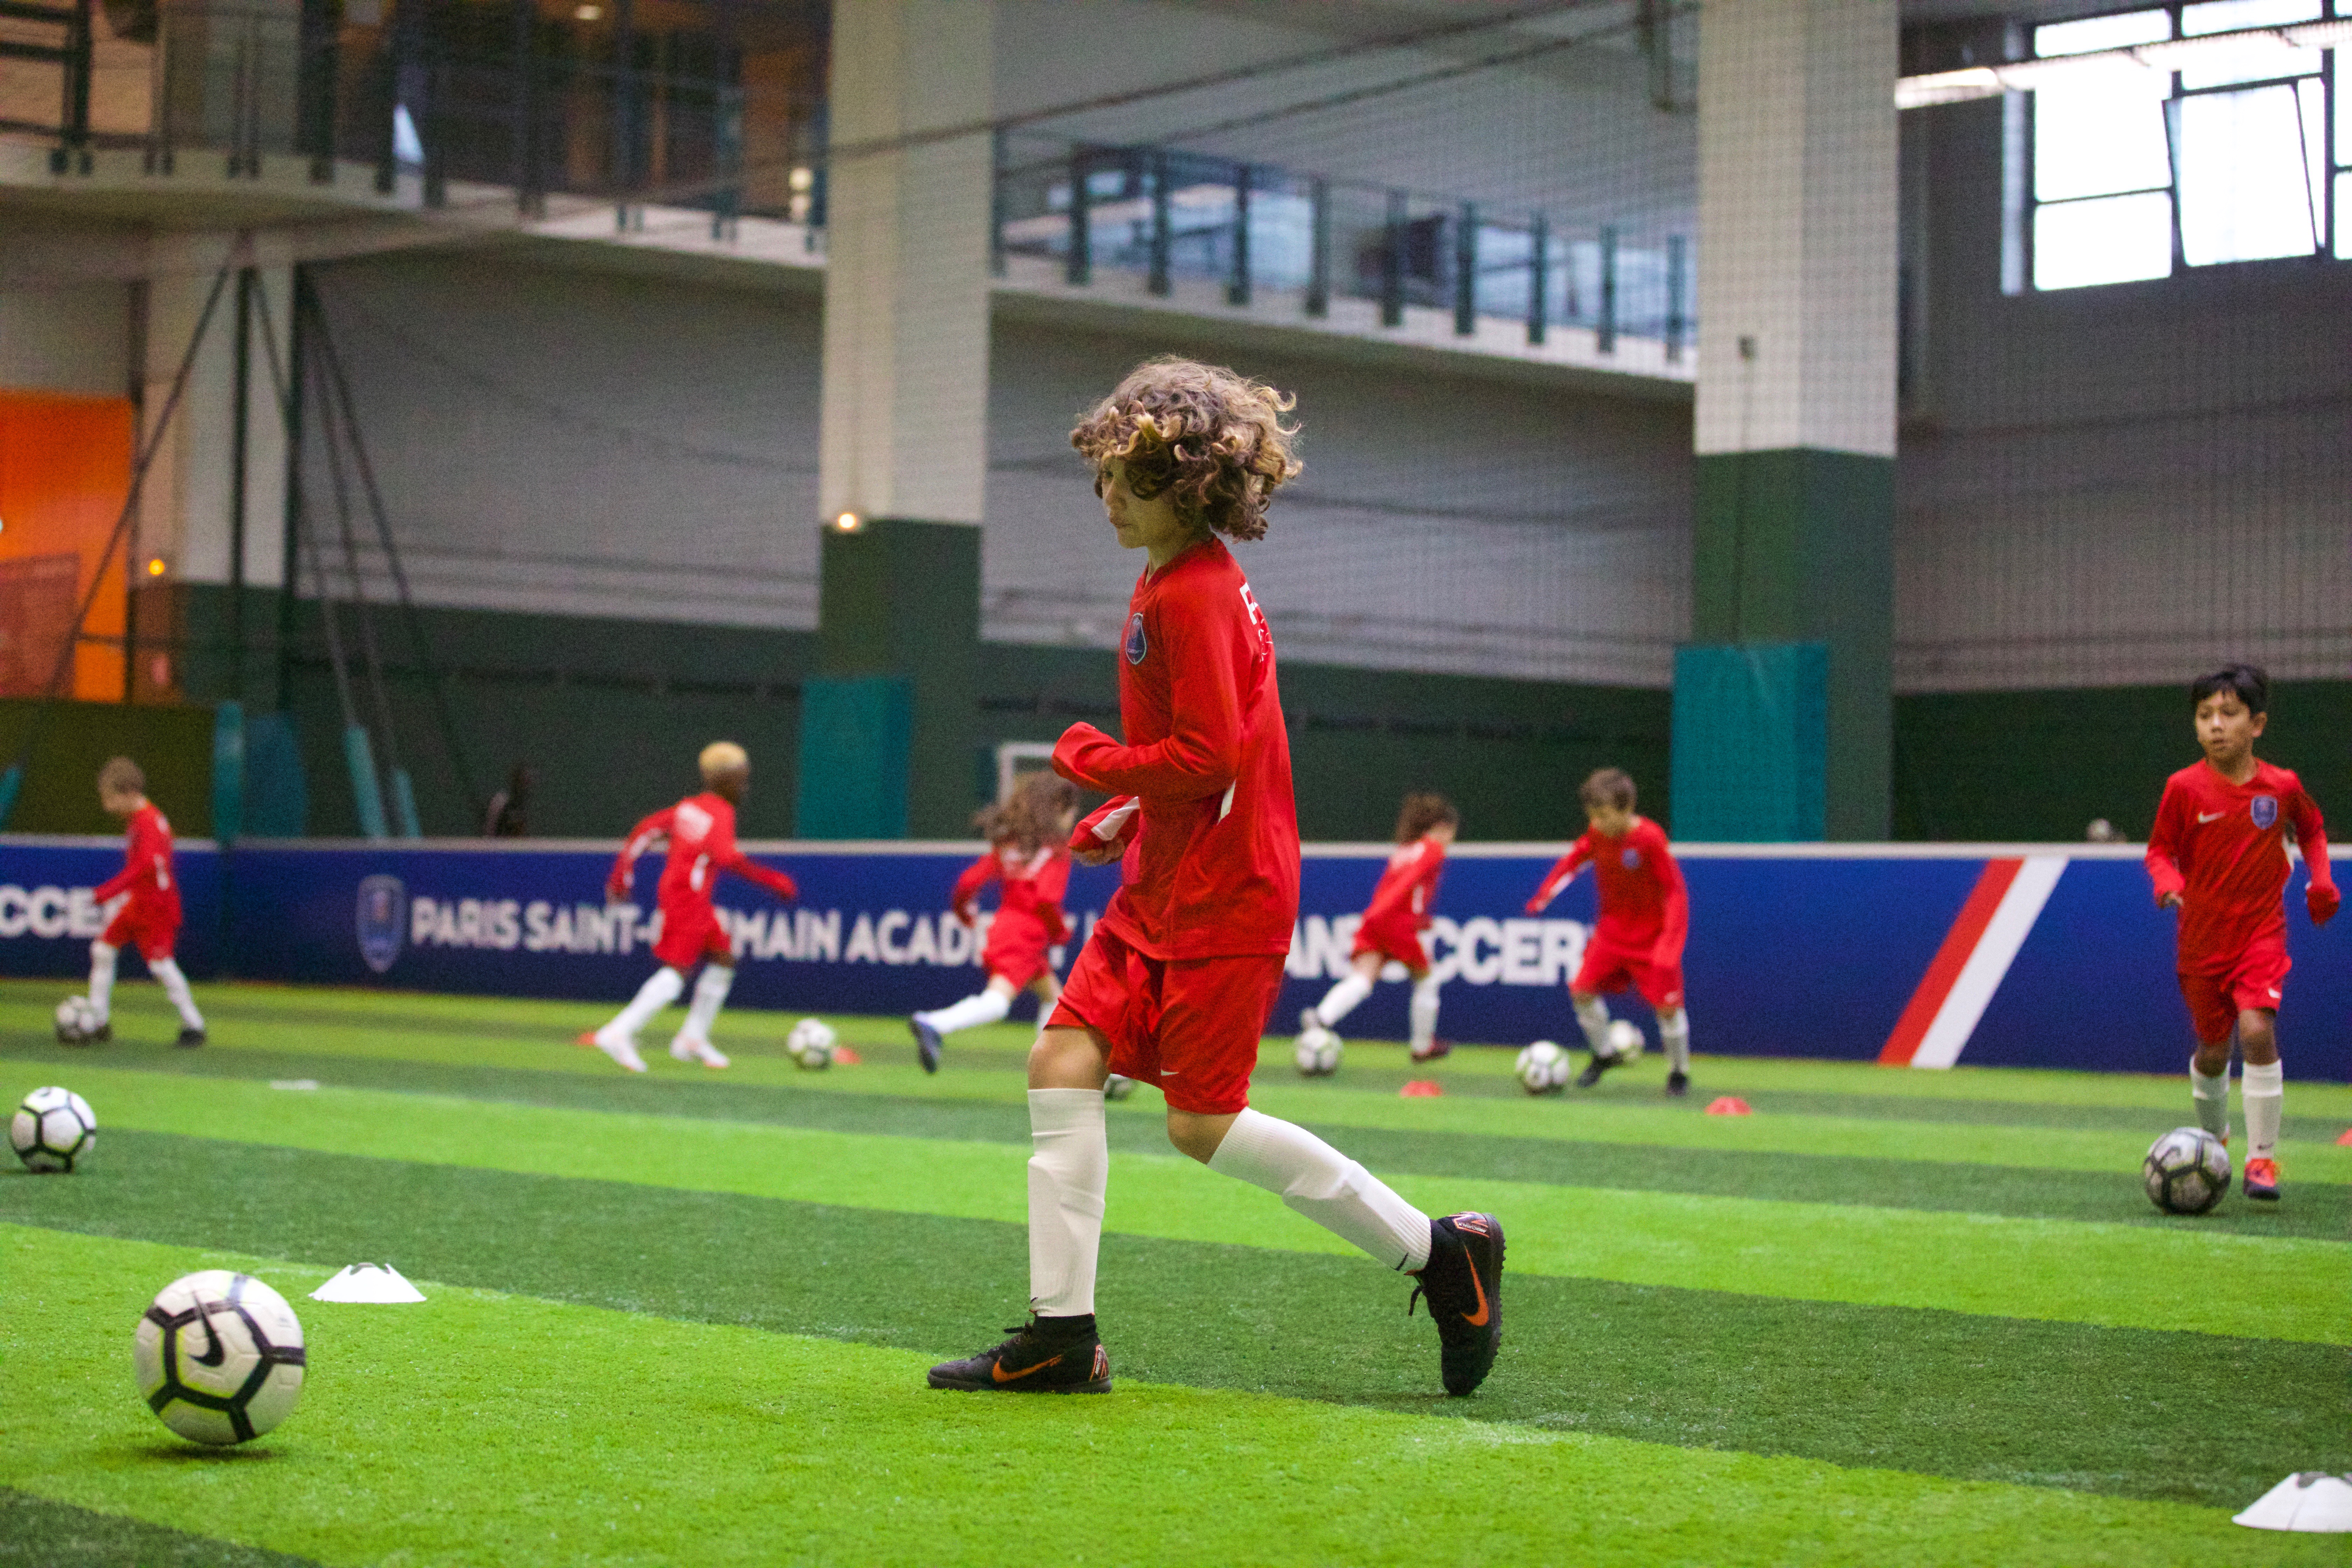 PSG Academy La Défense : école de foot et soccer pour les enfants